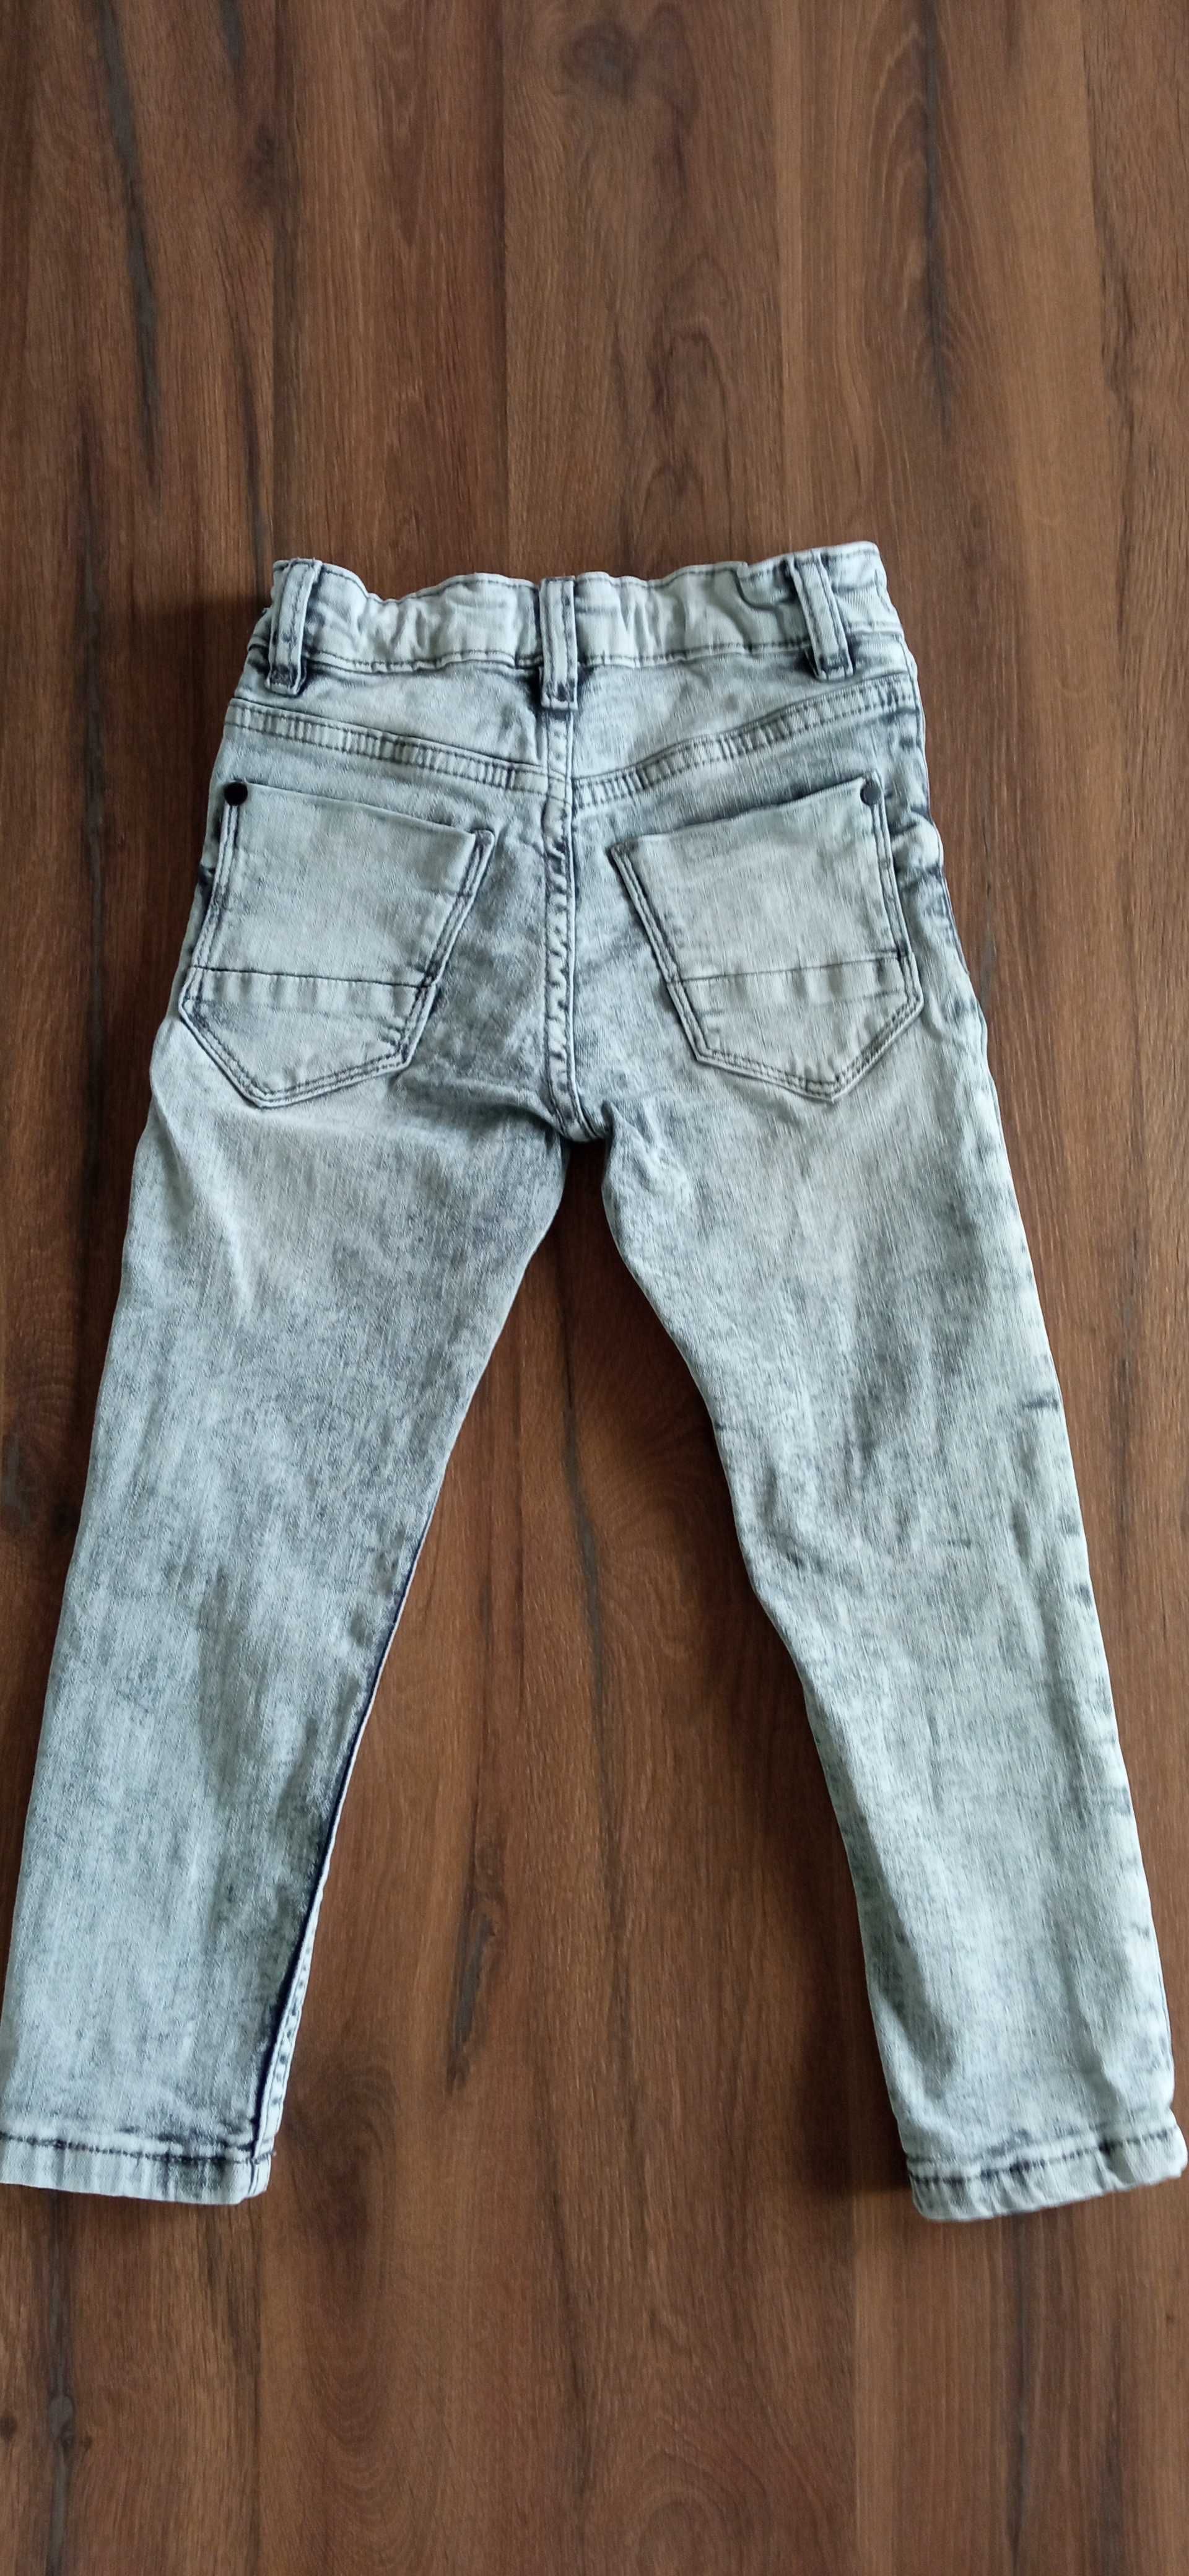 Spodnie Next 110 chłopiec dżinsy jeansy szare